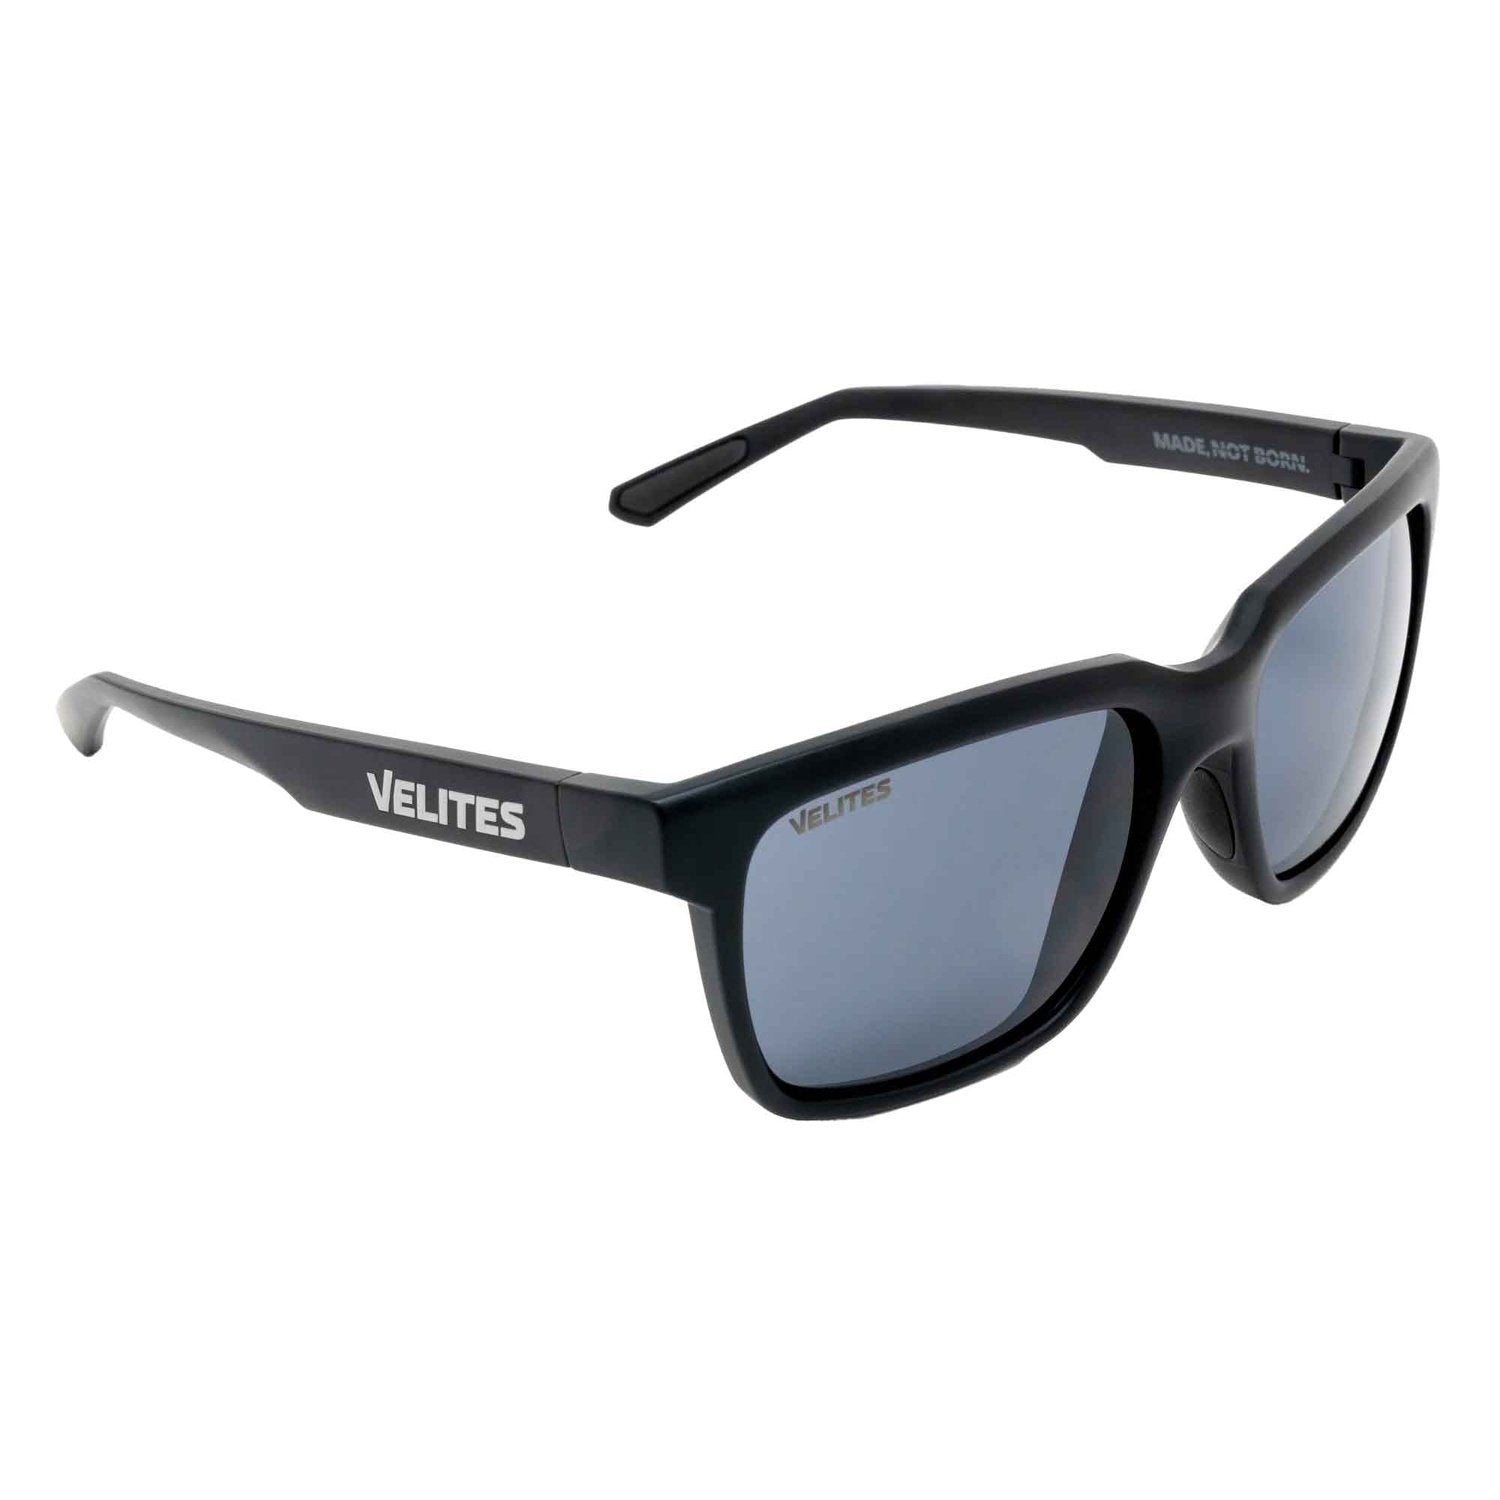 Velites Sonnenbrille "Urban Sport" kaufen bei HighPowered.ch